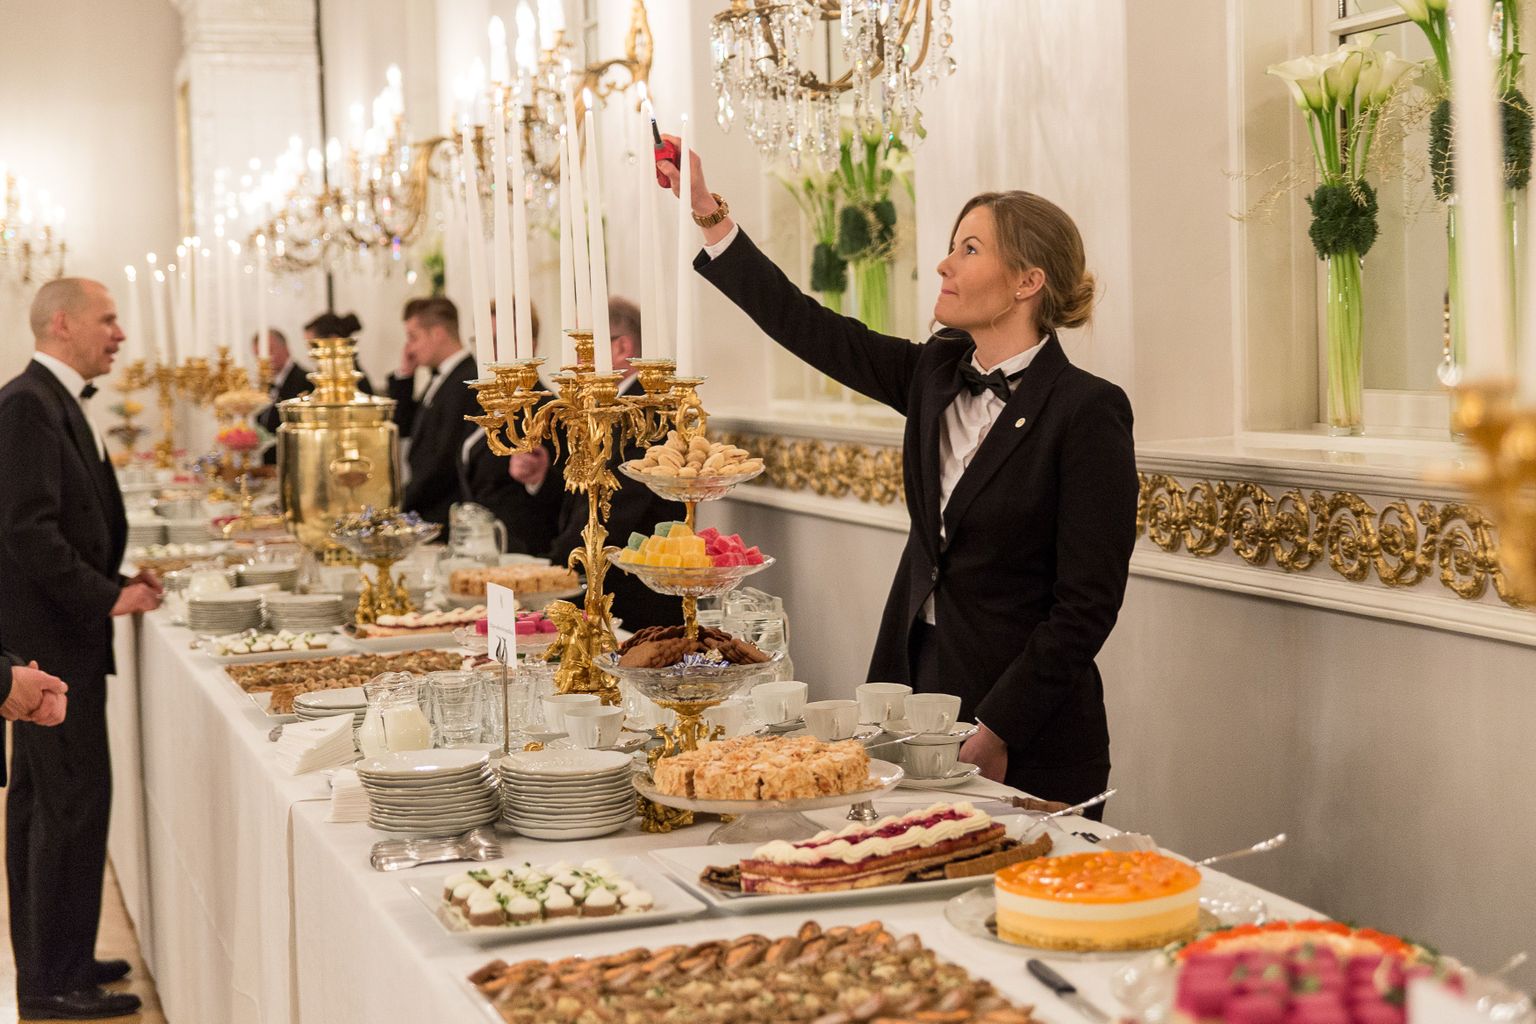 Möödunud aasta detsember: presidendilossis antakse peolauale viimast lihvi. Magusavaagnatel on kohvikõrvaseks astelpaju-toorjuustukook, rukkipiparkoogid, marmelaad, vaarikamoosiga võiküpsised ja loomulikult Ellen Svinhufvudi tort. Soolaste suupistete valikus olid muu hulgas Karjala pirukad ja rääbise-rukkipirukas.